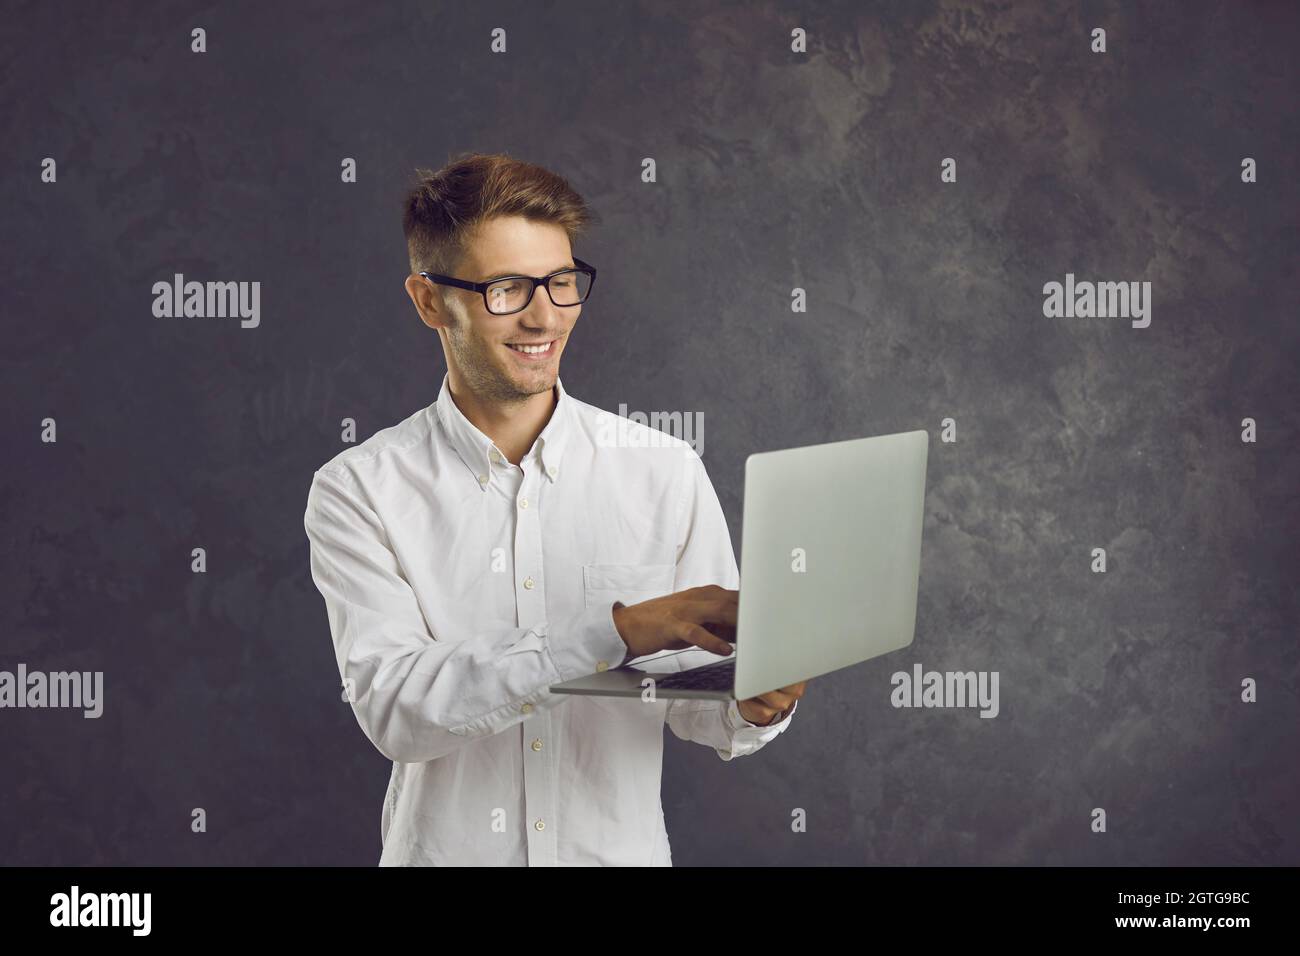 L'uomo sorridente si alza su sfondo grigio e digita il testo sul portatile che tiene nelle mani. Foto Stock